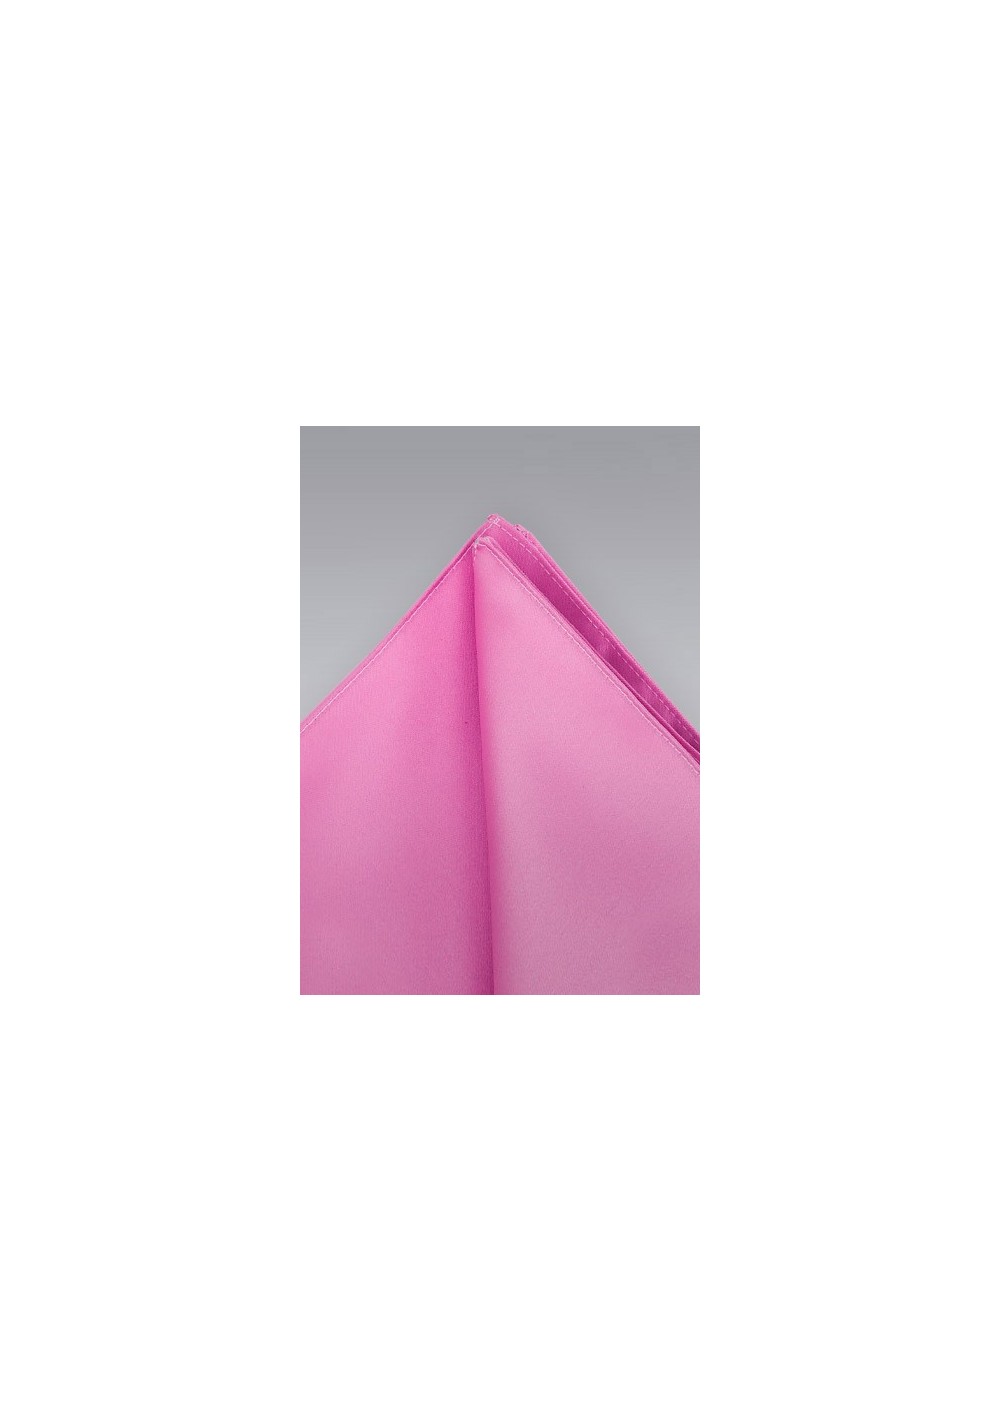 Pocket Squares - Hot pink pocket square